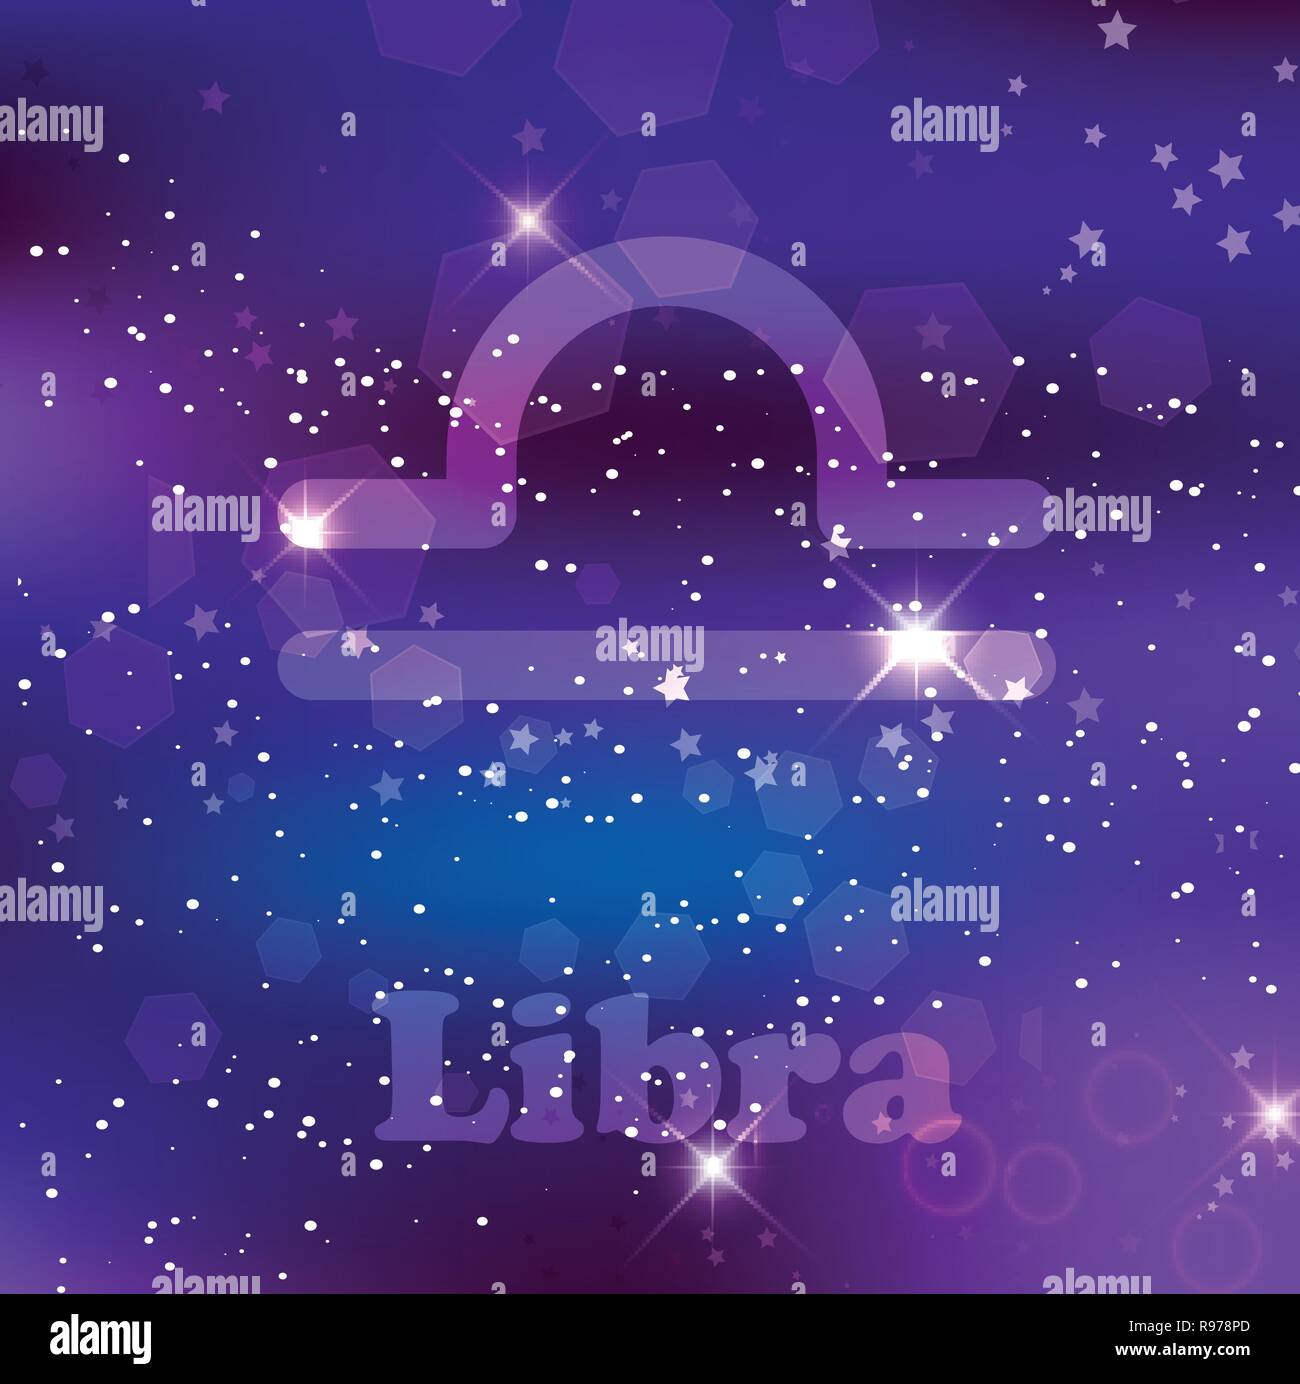 Bilancia segno zodiacale e costellazione sul cosmica sfondo viola con stelle luccicanti e nebulosa. Illustrazione Vettoriale, banner, poster, bilance card. Spazio Illustrazione Vettoriale